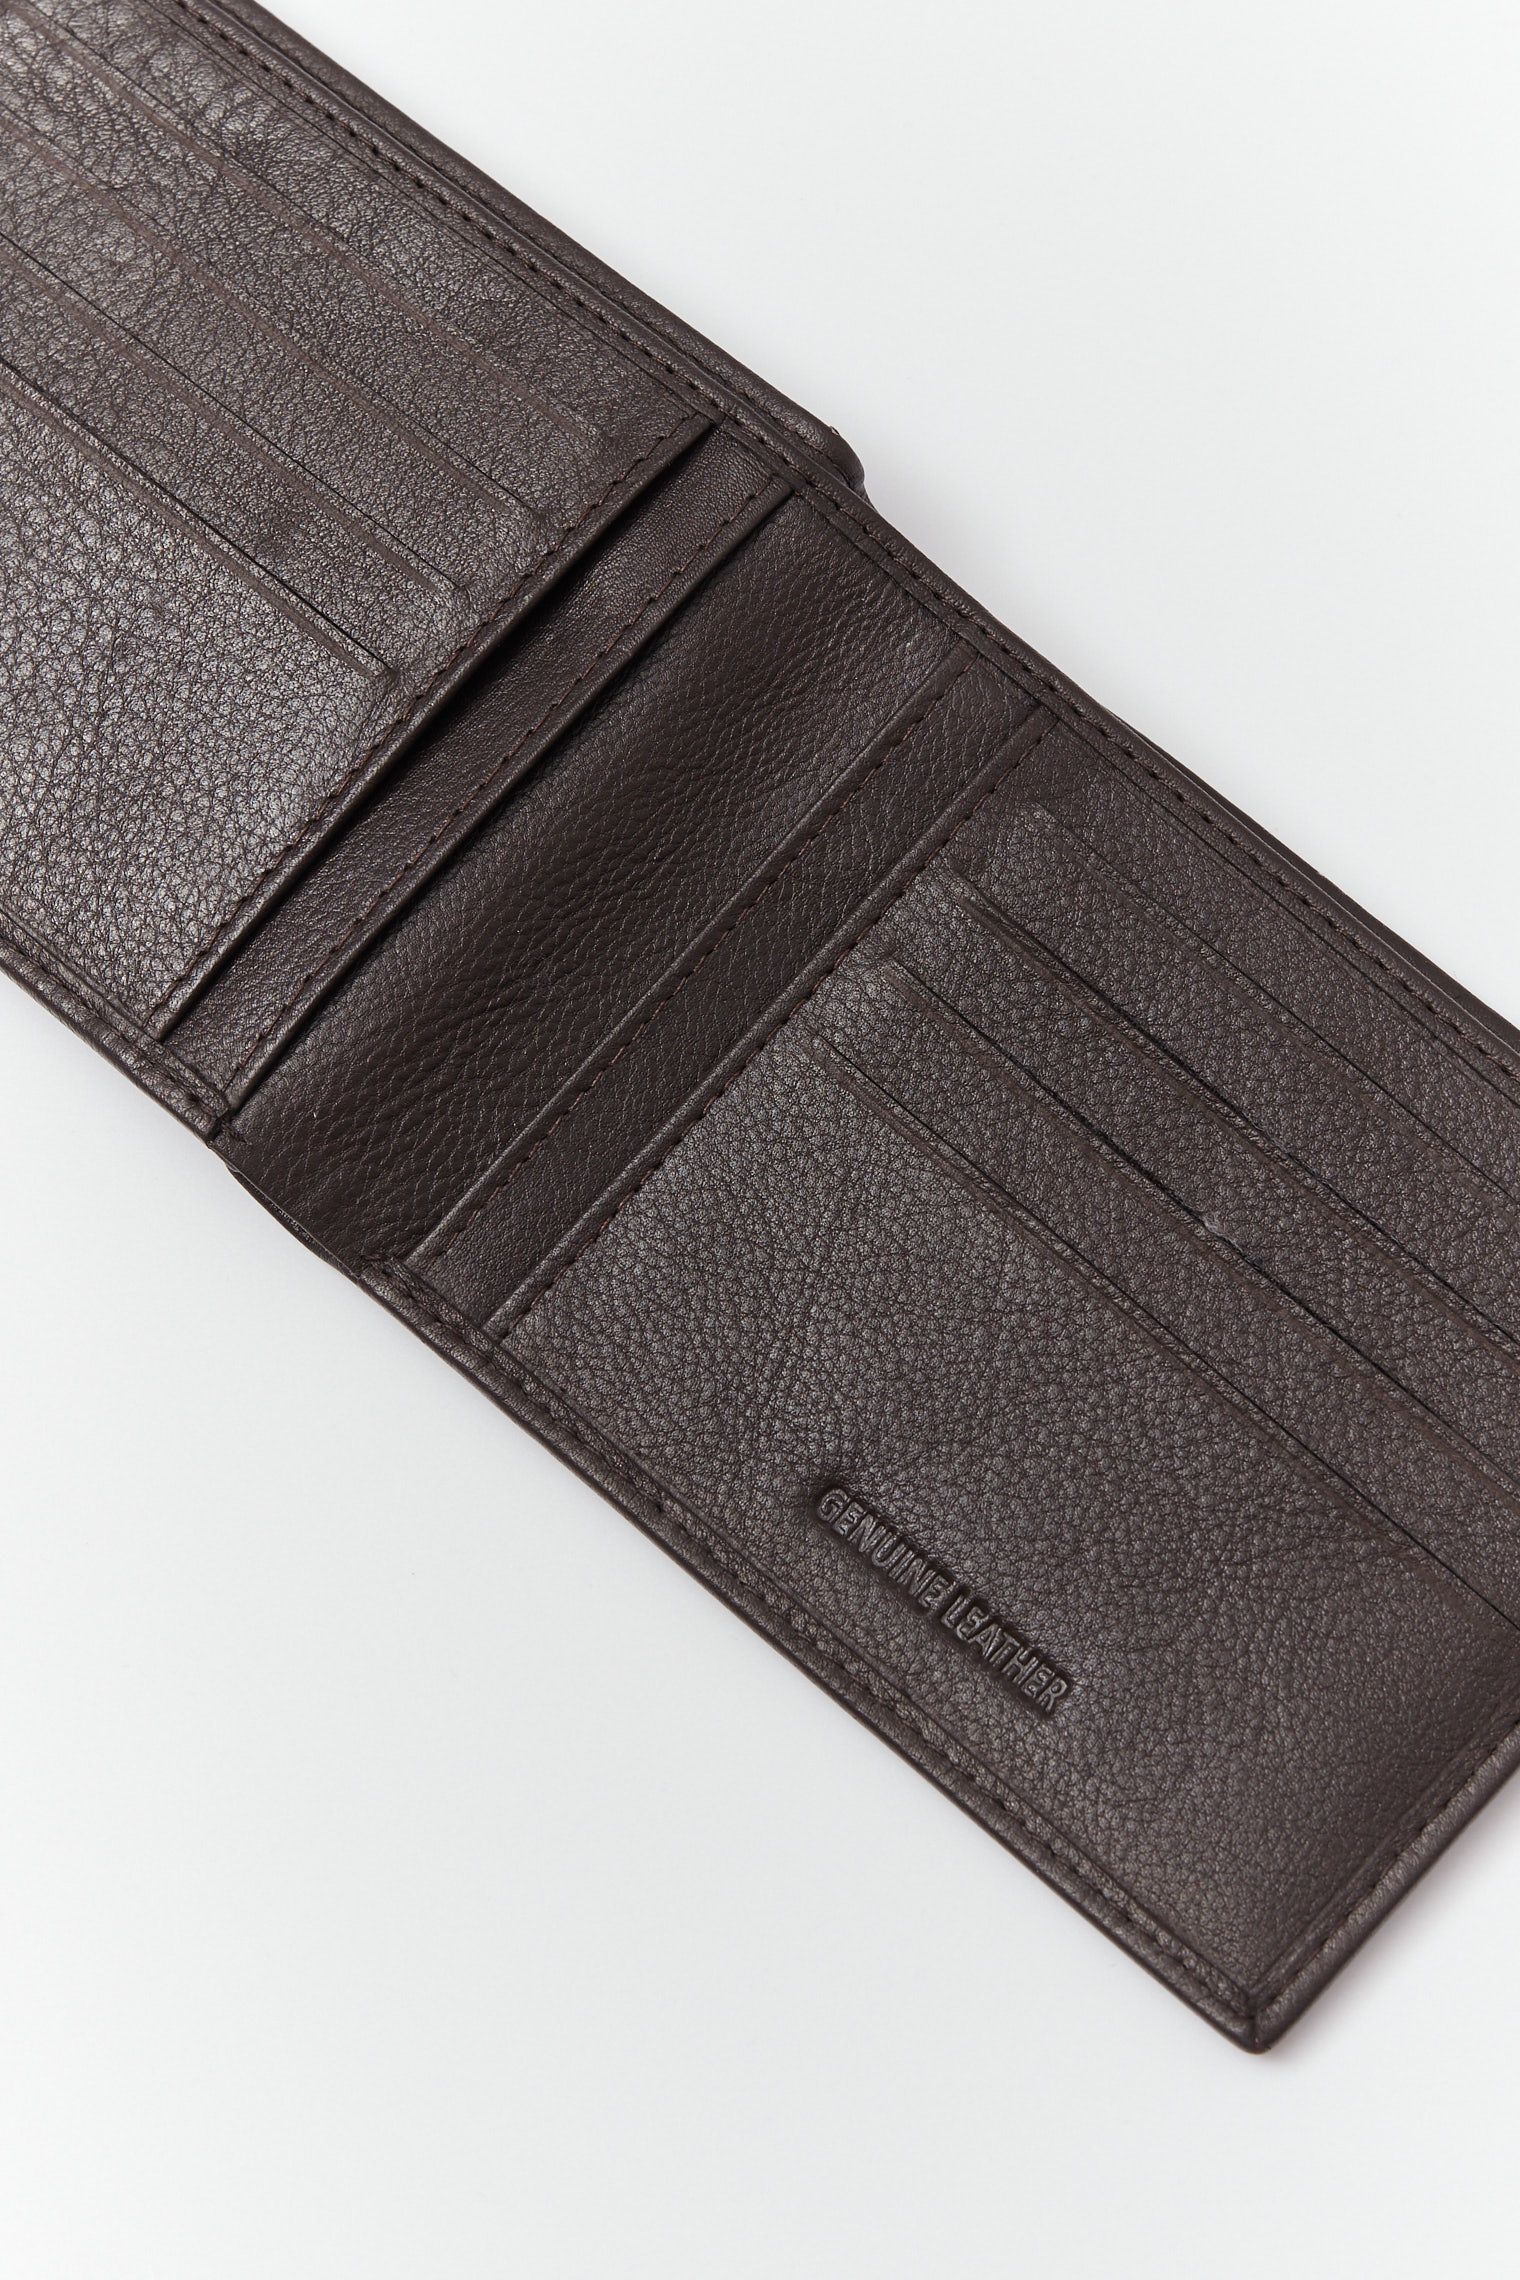 Skórzany portfel męski w kolorze brązowym